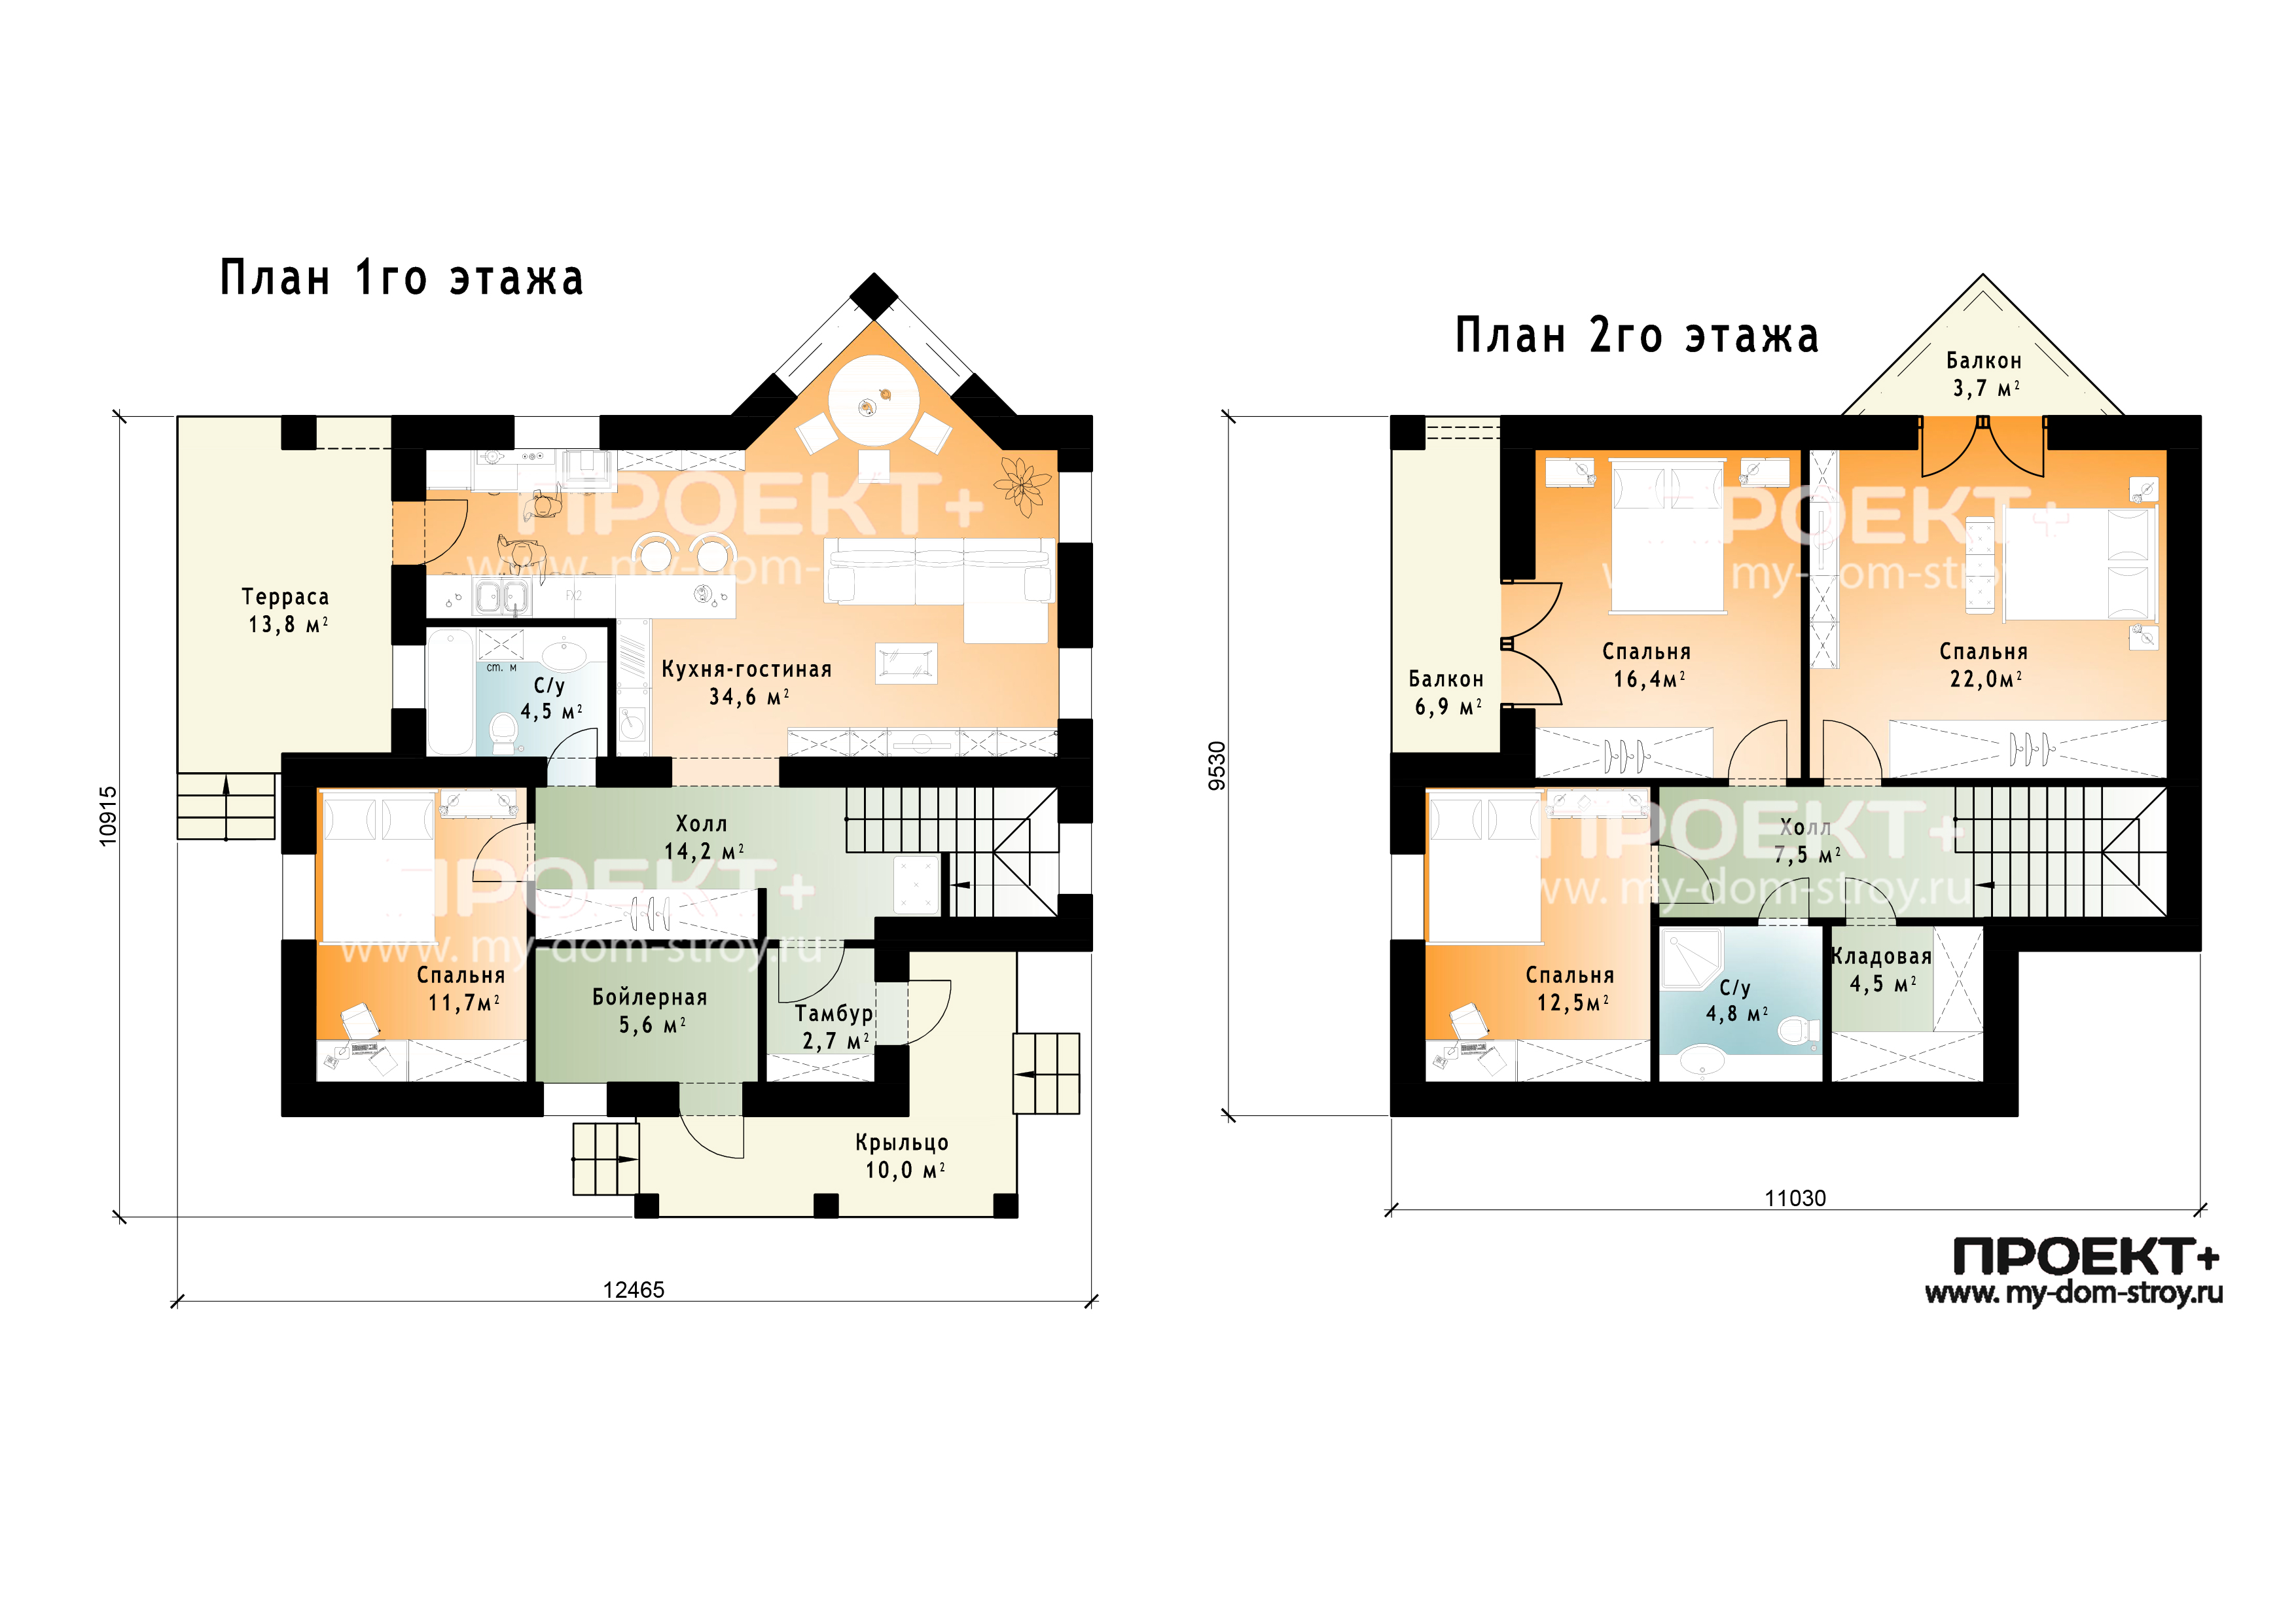 План 1-го этажа дома. План 1 го этажа частный дом. Этаж b1. 1-97 Этажи. Проект ковид